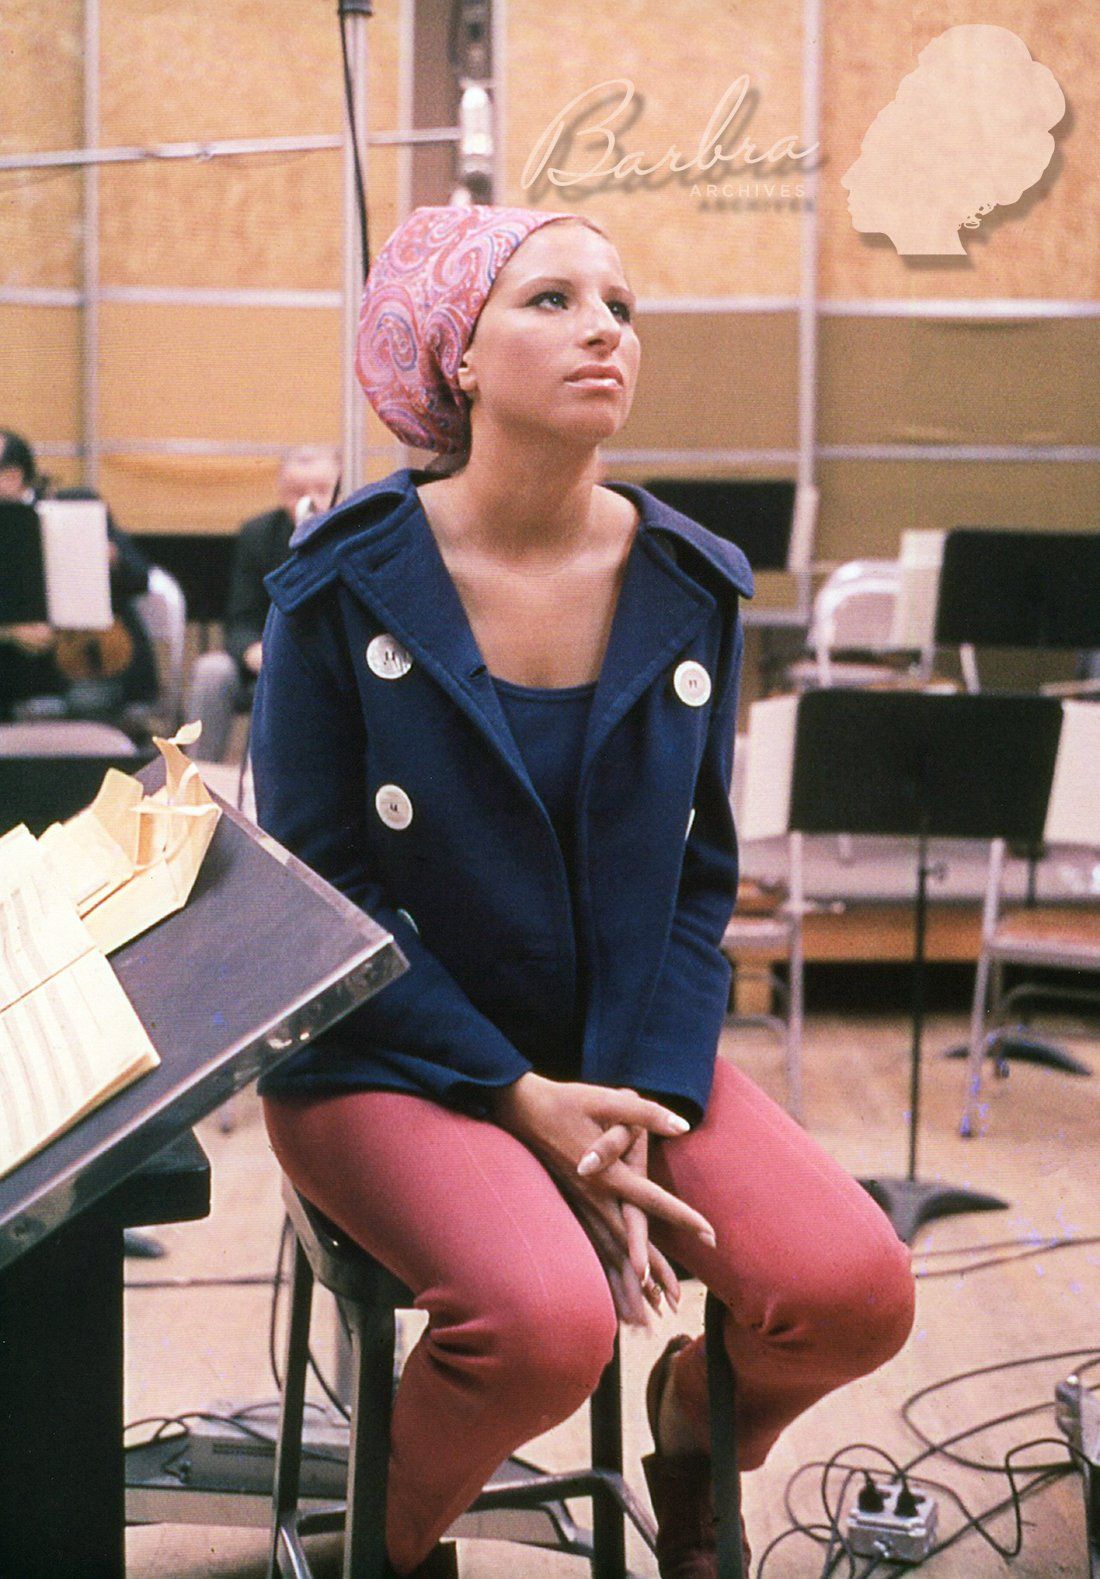 Barbra Streisand in the recording studio making this album